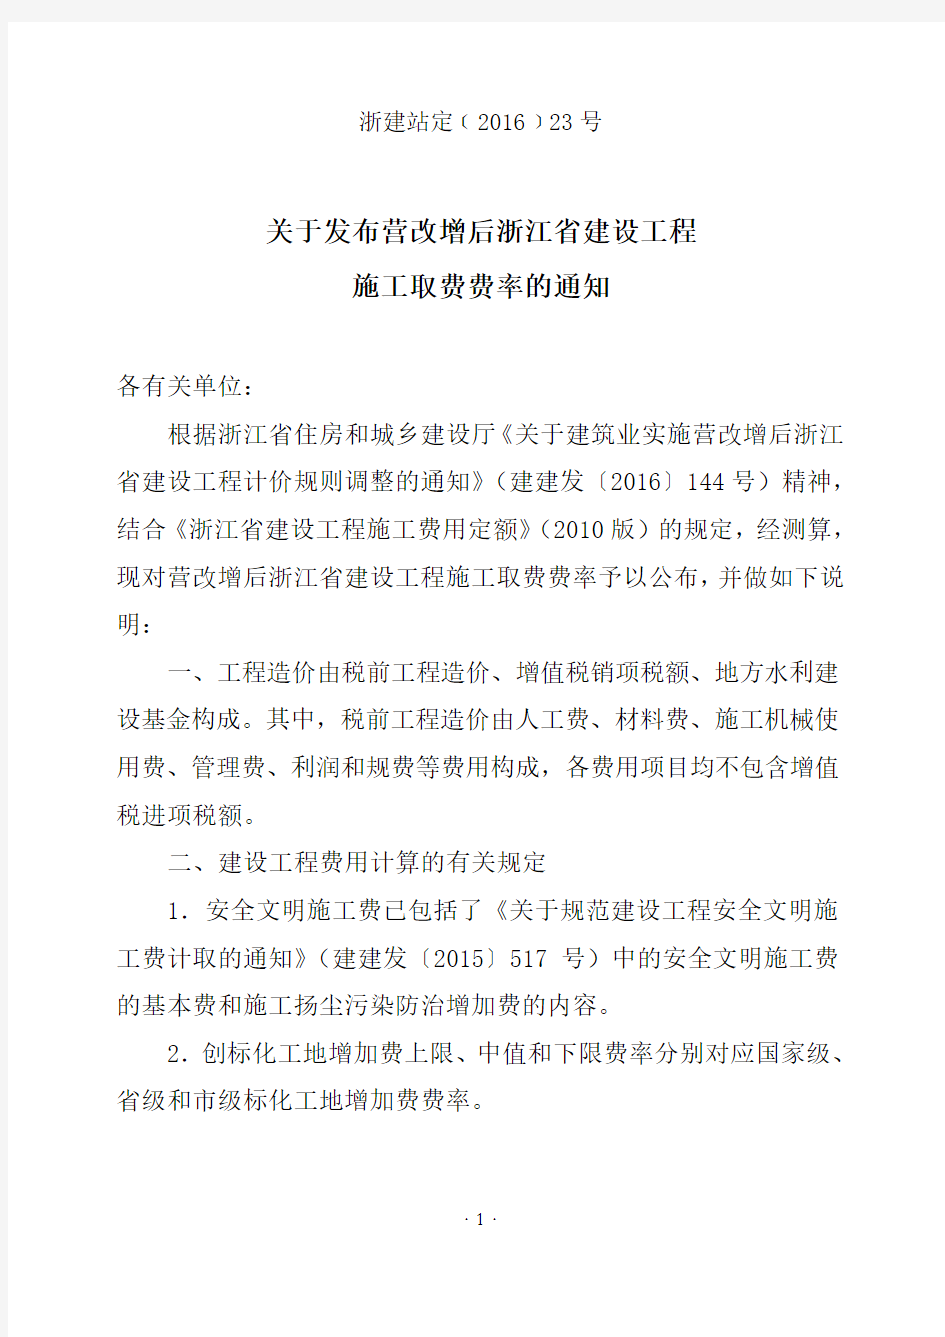 关于发布营改增后浙江省建设工程施工取费费率的通知